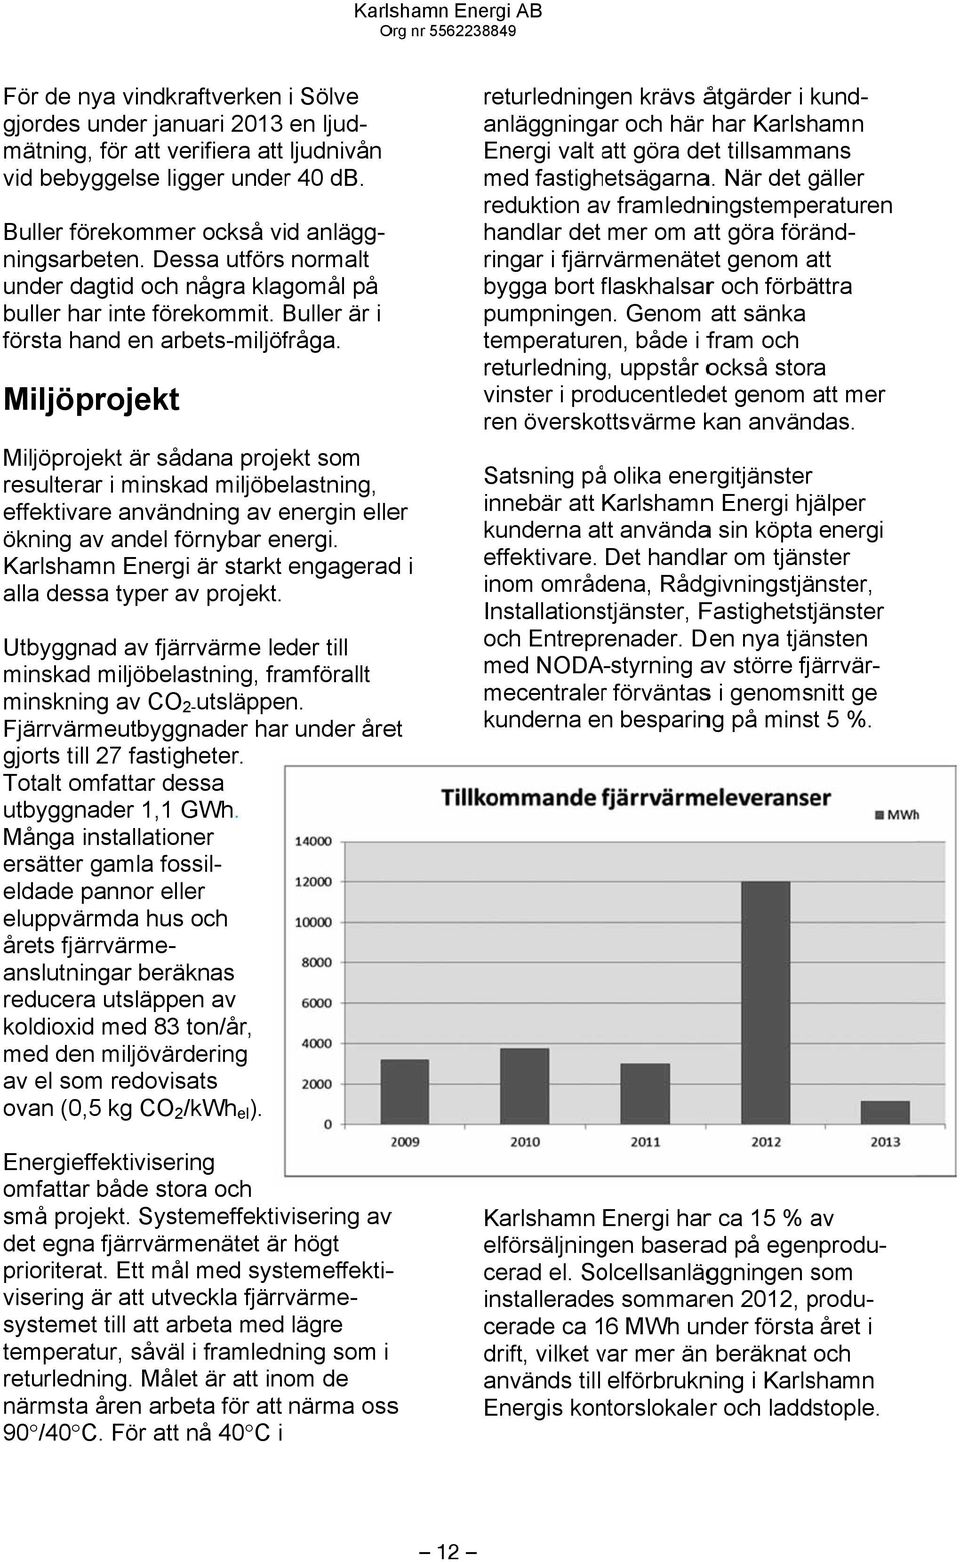 Karlshamn Energi är starkt engageradd i alla dessa typer av projekt. Utbyggnad av fjärrvärme leder till minskad miljöbelastning, framförallt minskning av CO 2- utsläppen.